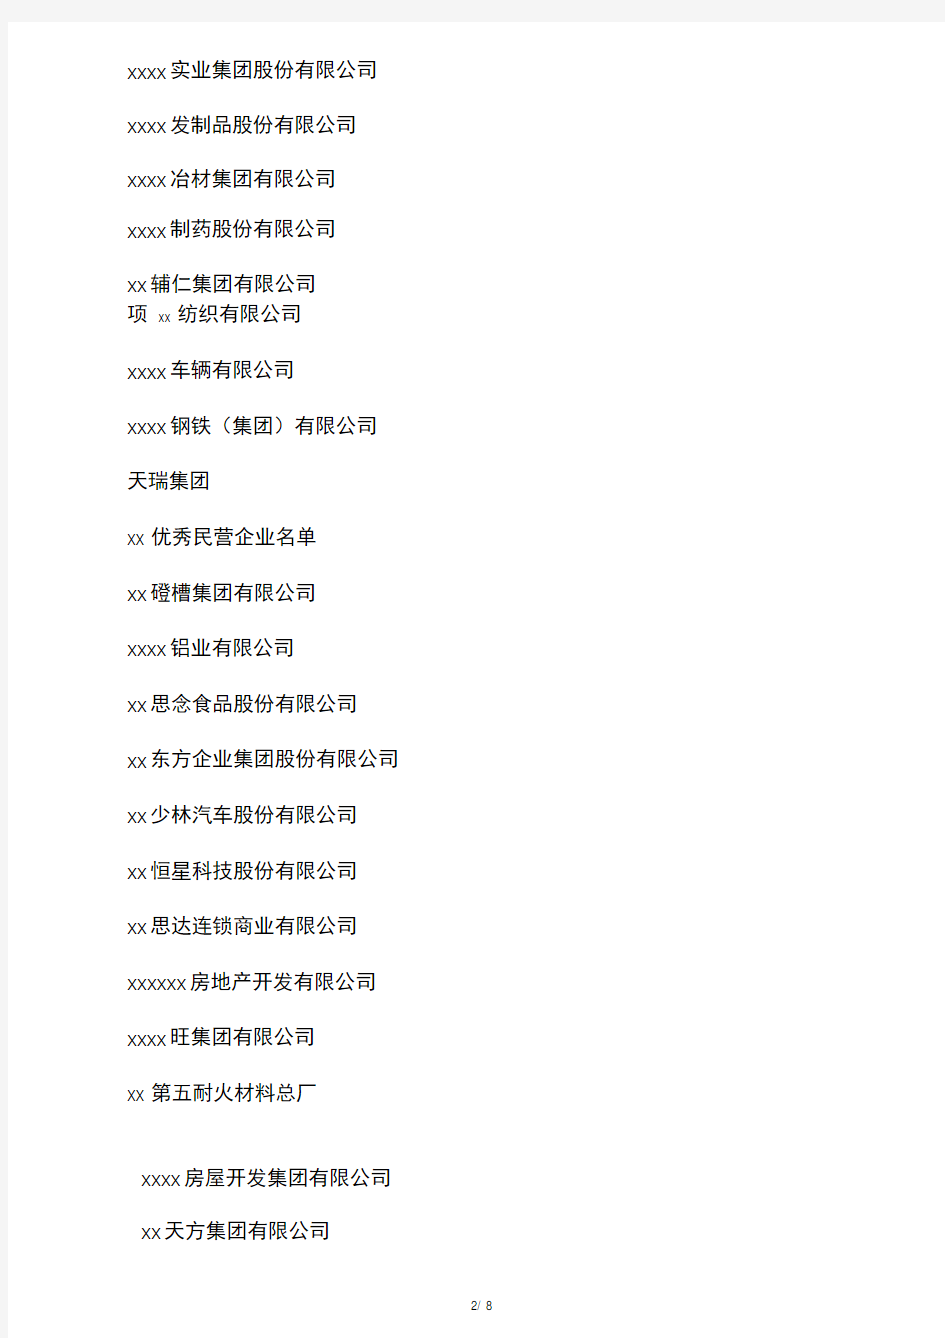 河南省著名企业及优秀企业家名单(2010年度)